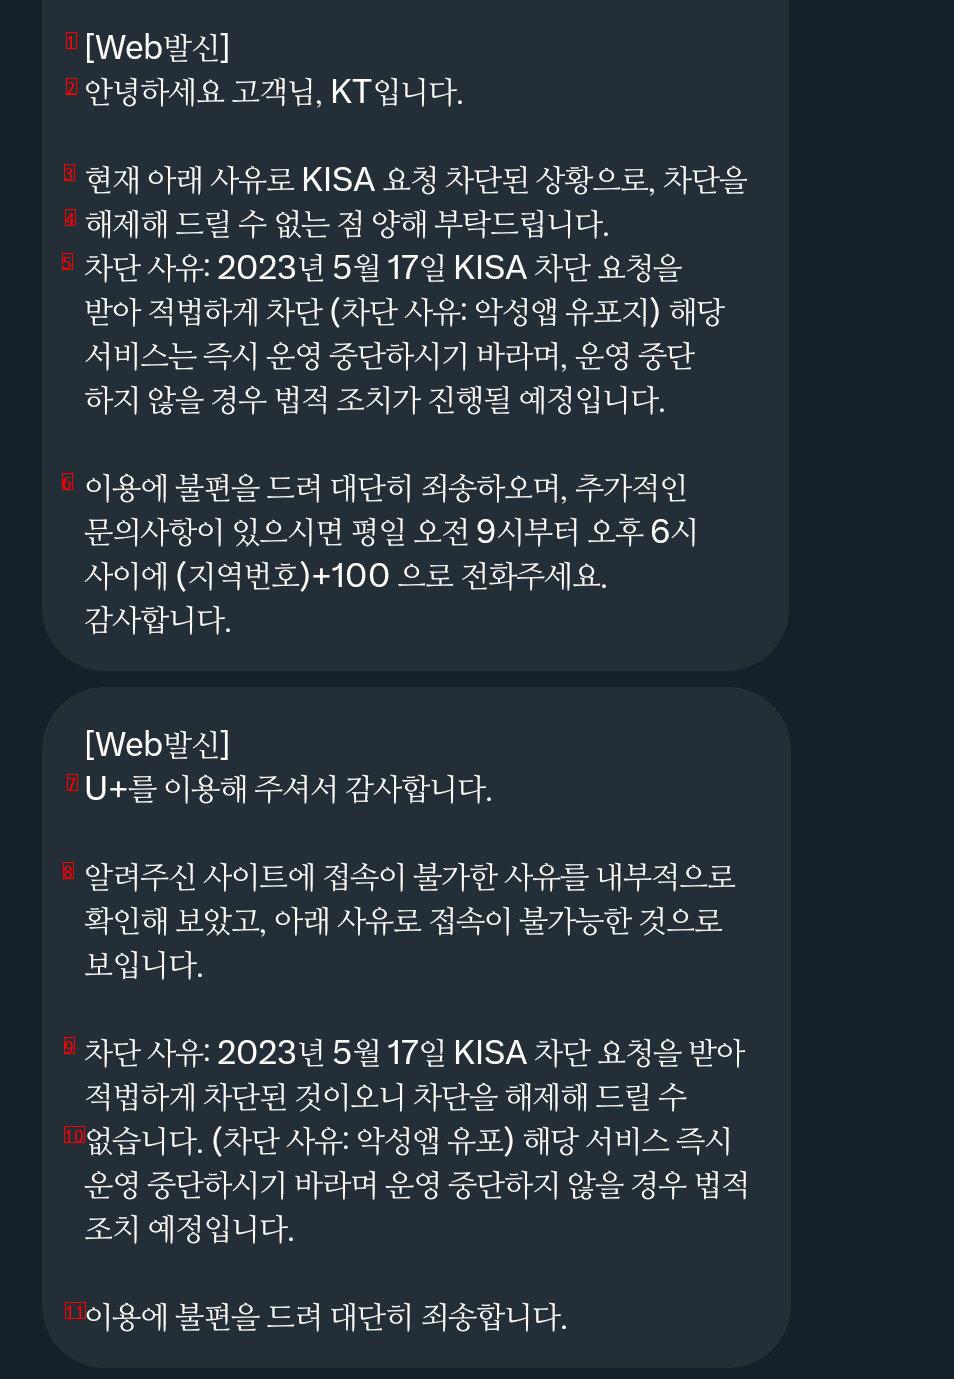 한국인터넷진흥원 요청으로 sk,kt,유플 클라우드플레어 서비스 도메인 차단중